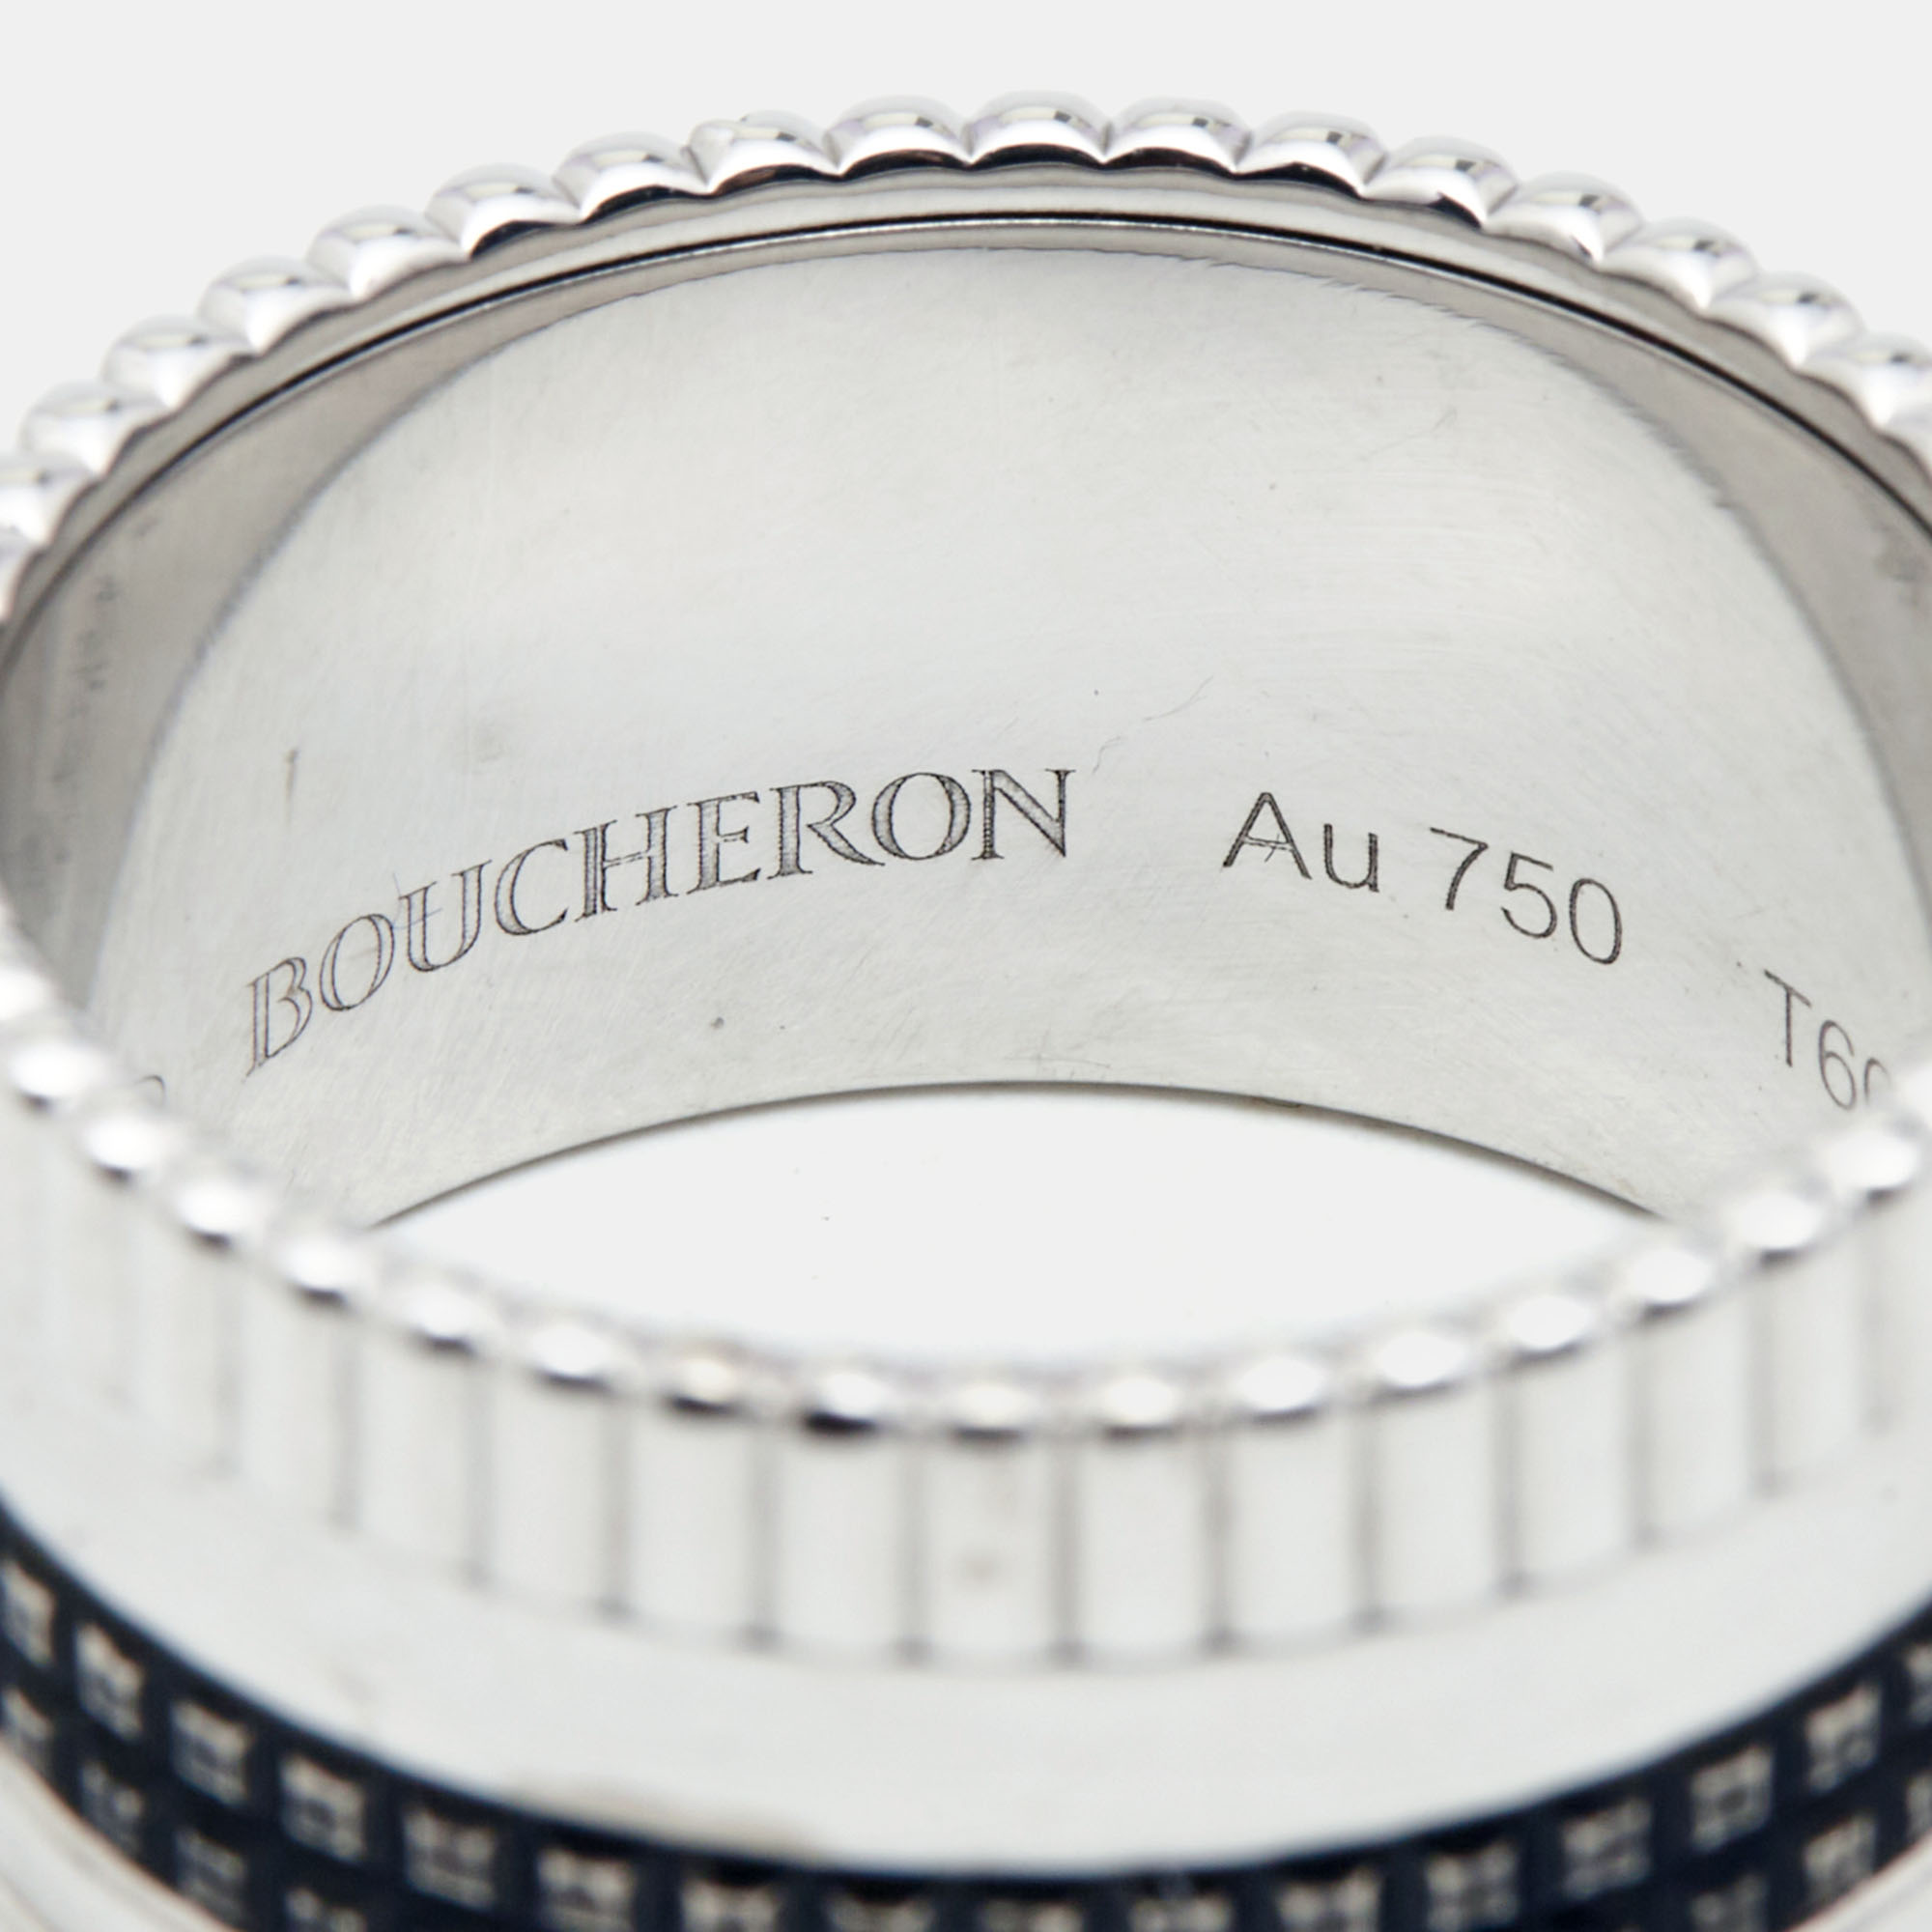 Boucheron Quatre Classique Black Edition PVD 18k White Gold Large Band Ring Size 60